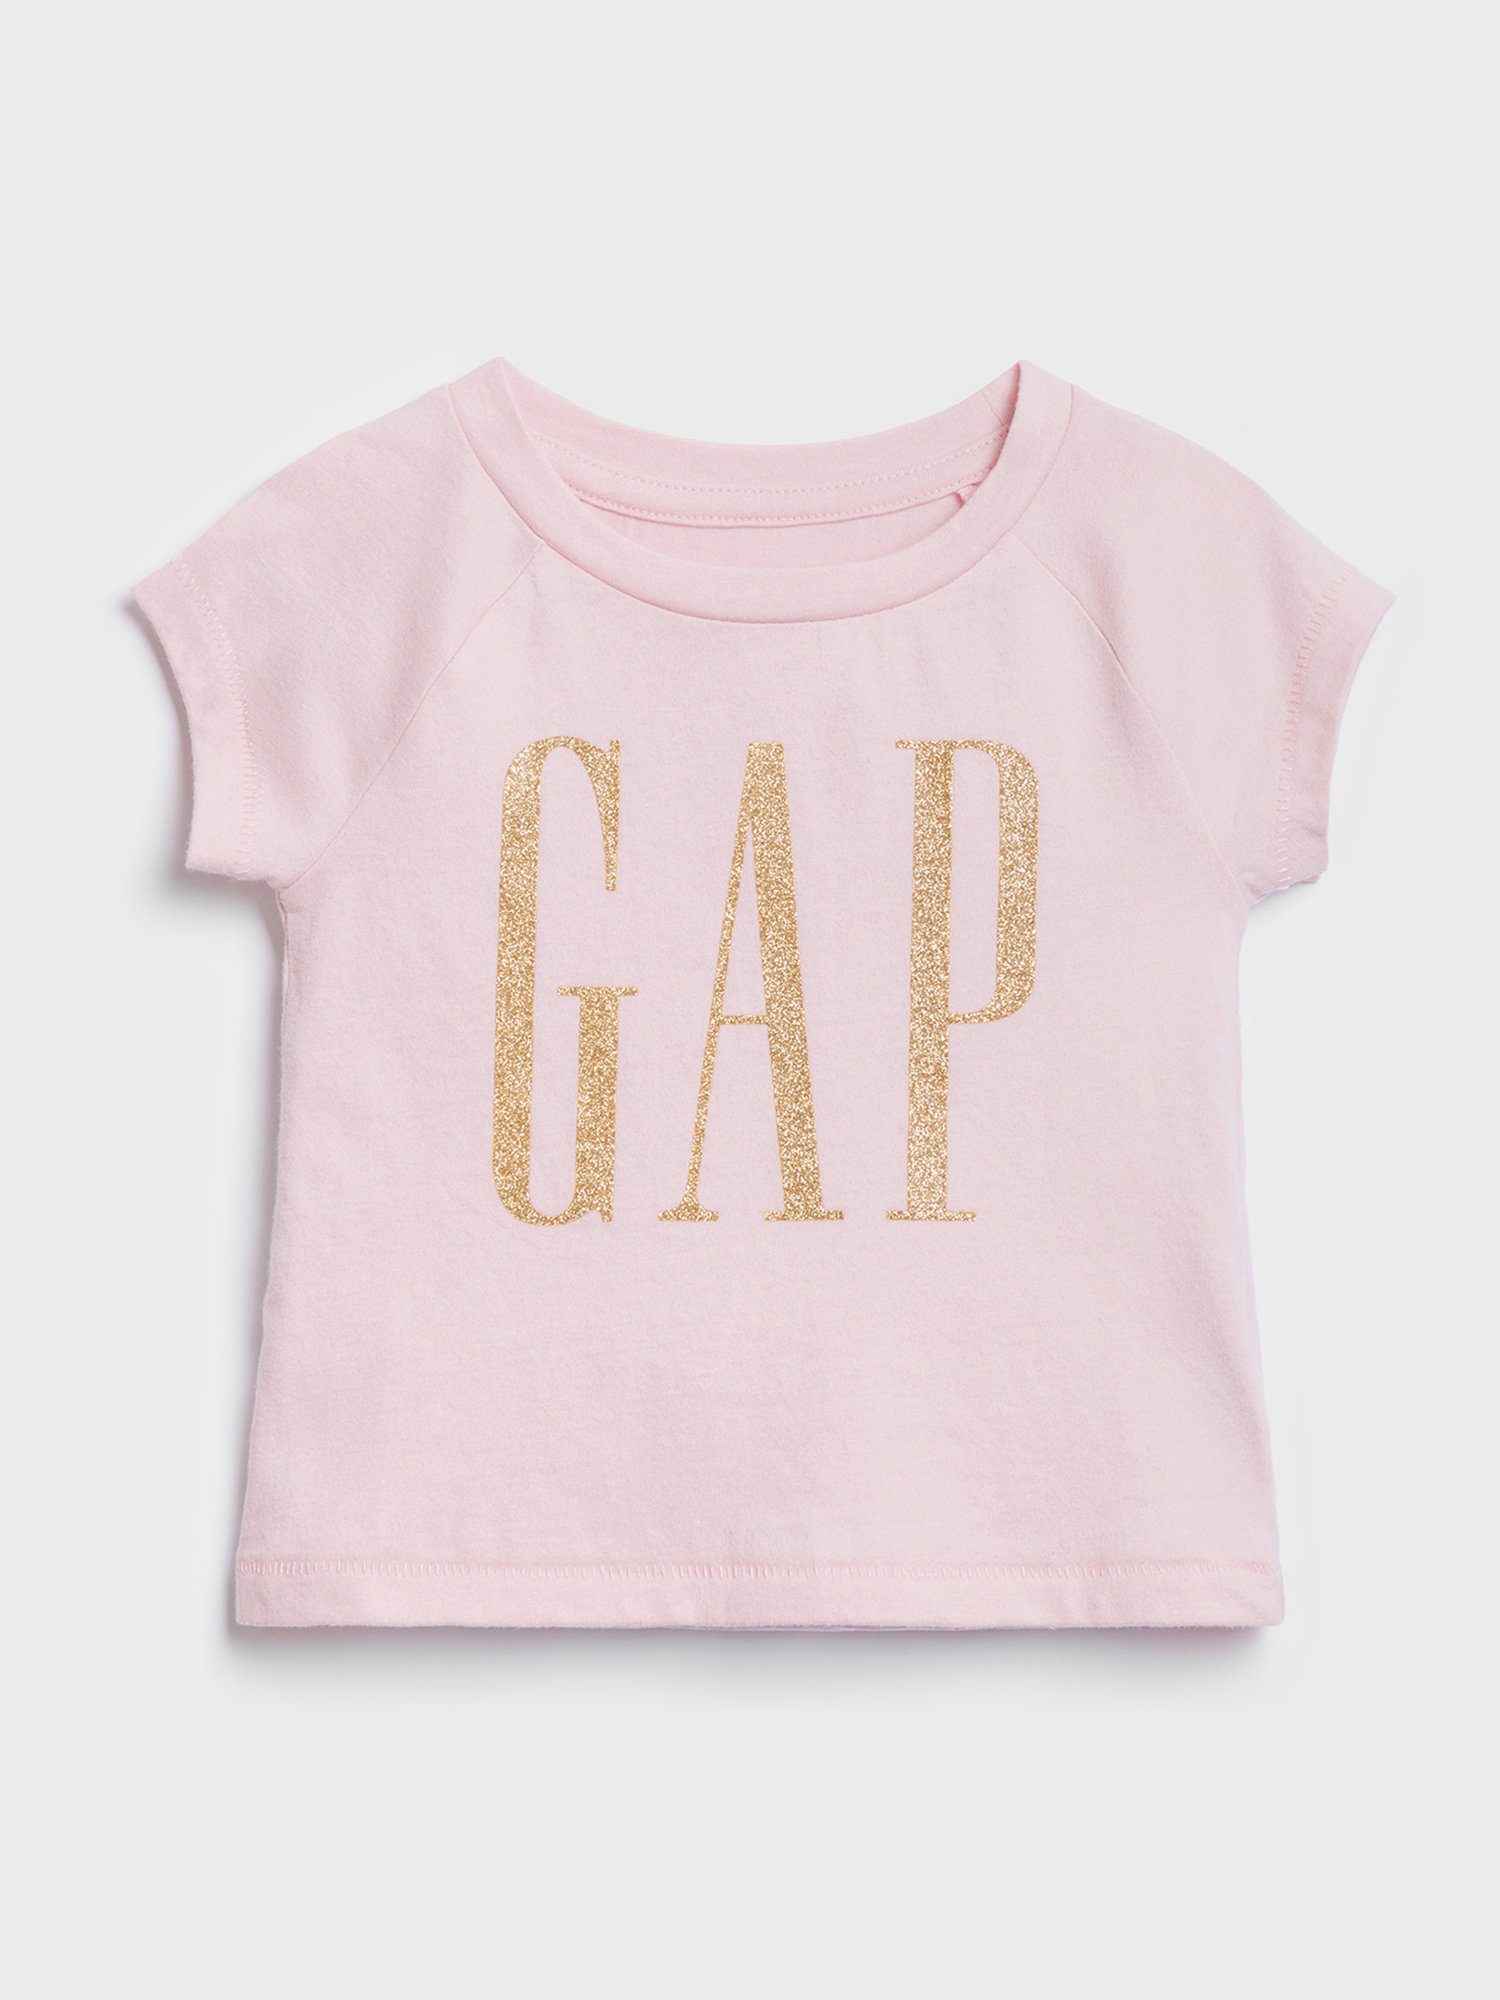 Růžové holčičí tričko GAP Logo